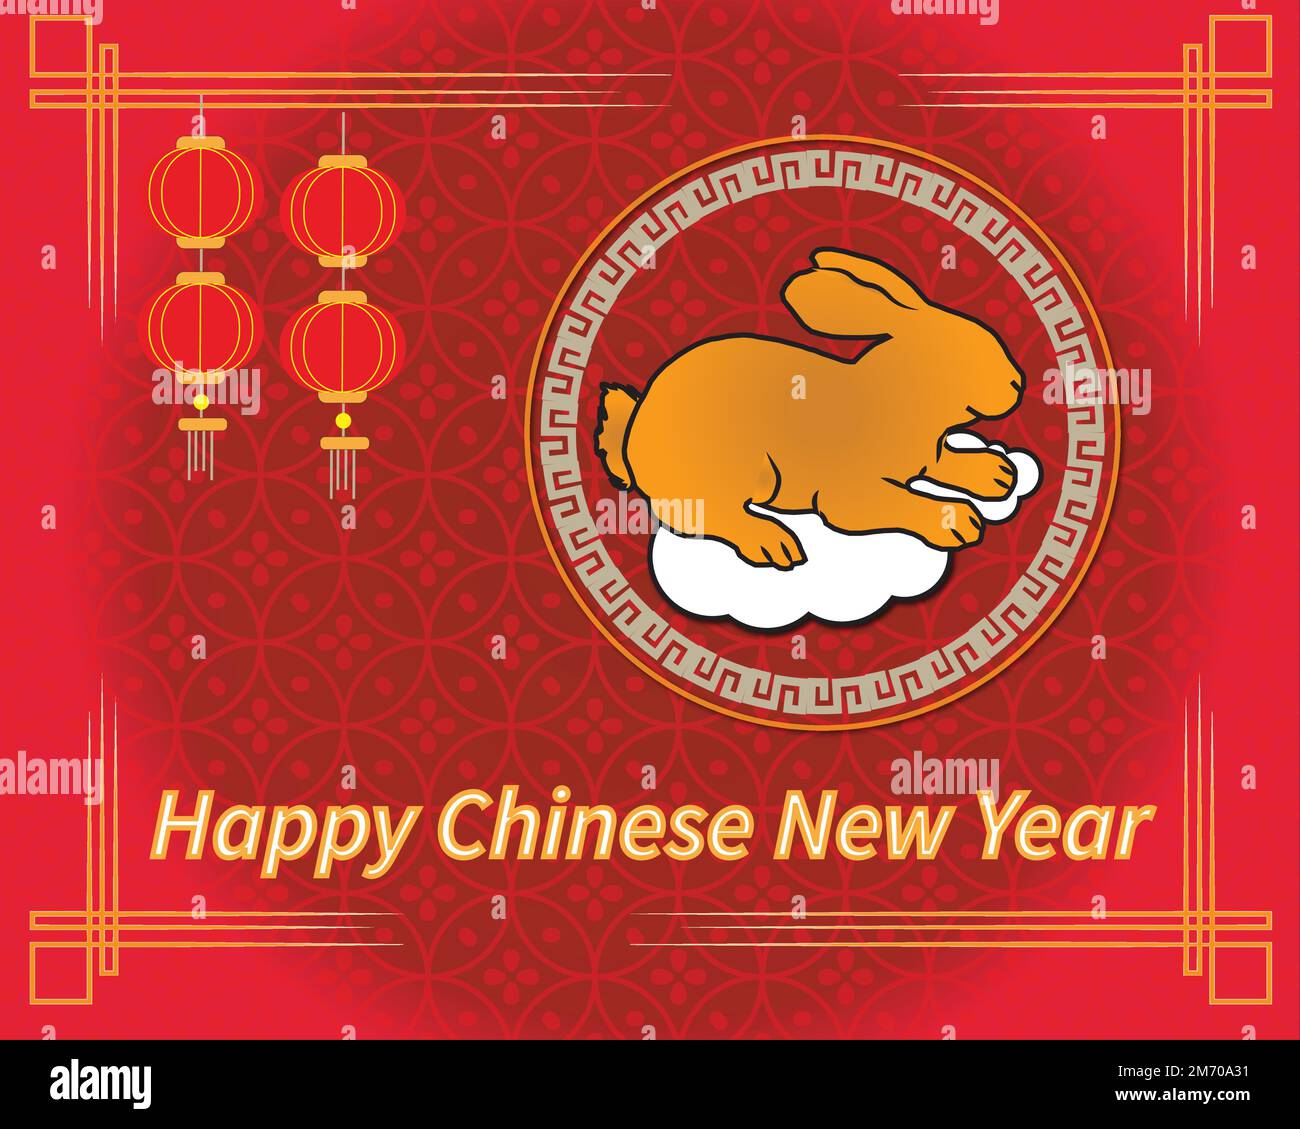 Bonne année chinoise 2023, année du lapin. Le fond rouge de tempalte contient le zodiaque de lapin des Chinois et de la lanterne. Illustration de Vecteur